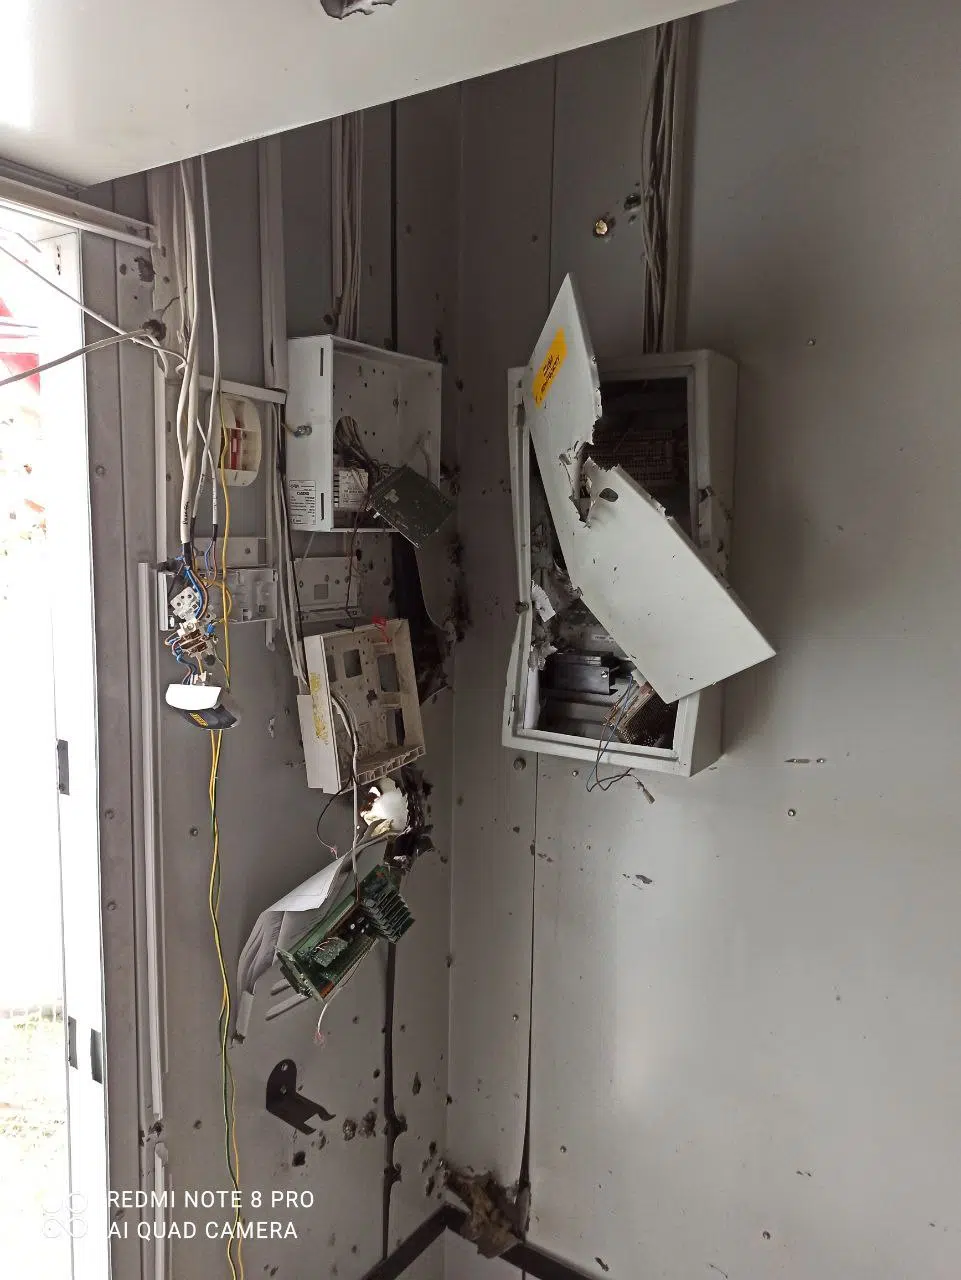 Разрушенное и расстрелянное оборудование Vodafone после оккупации. Фото предоставлено компанией